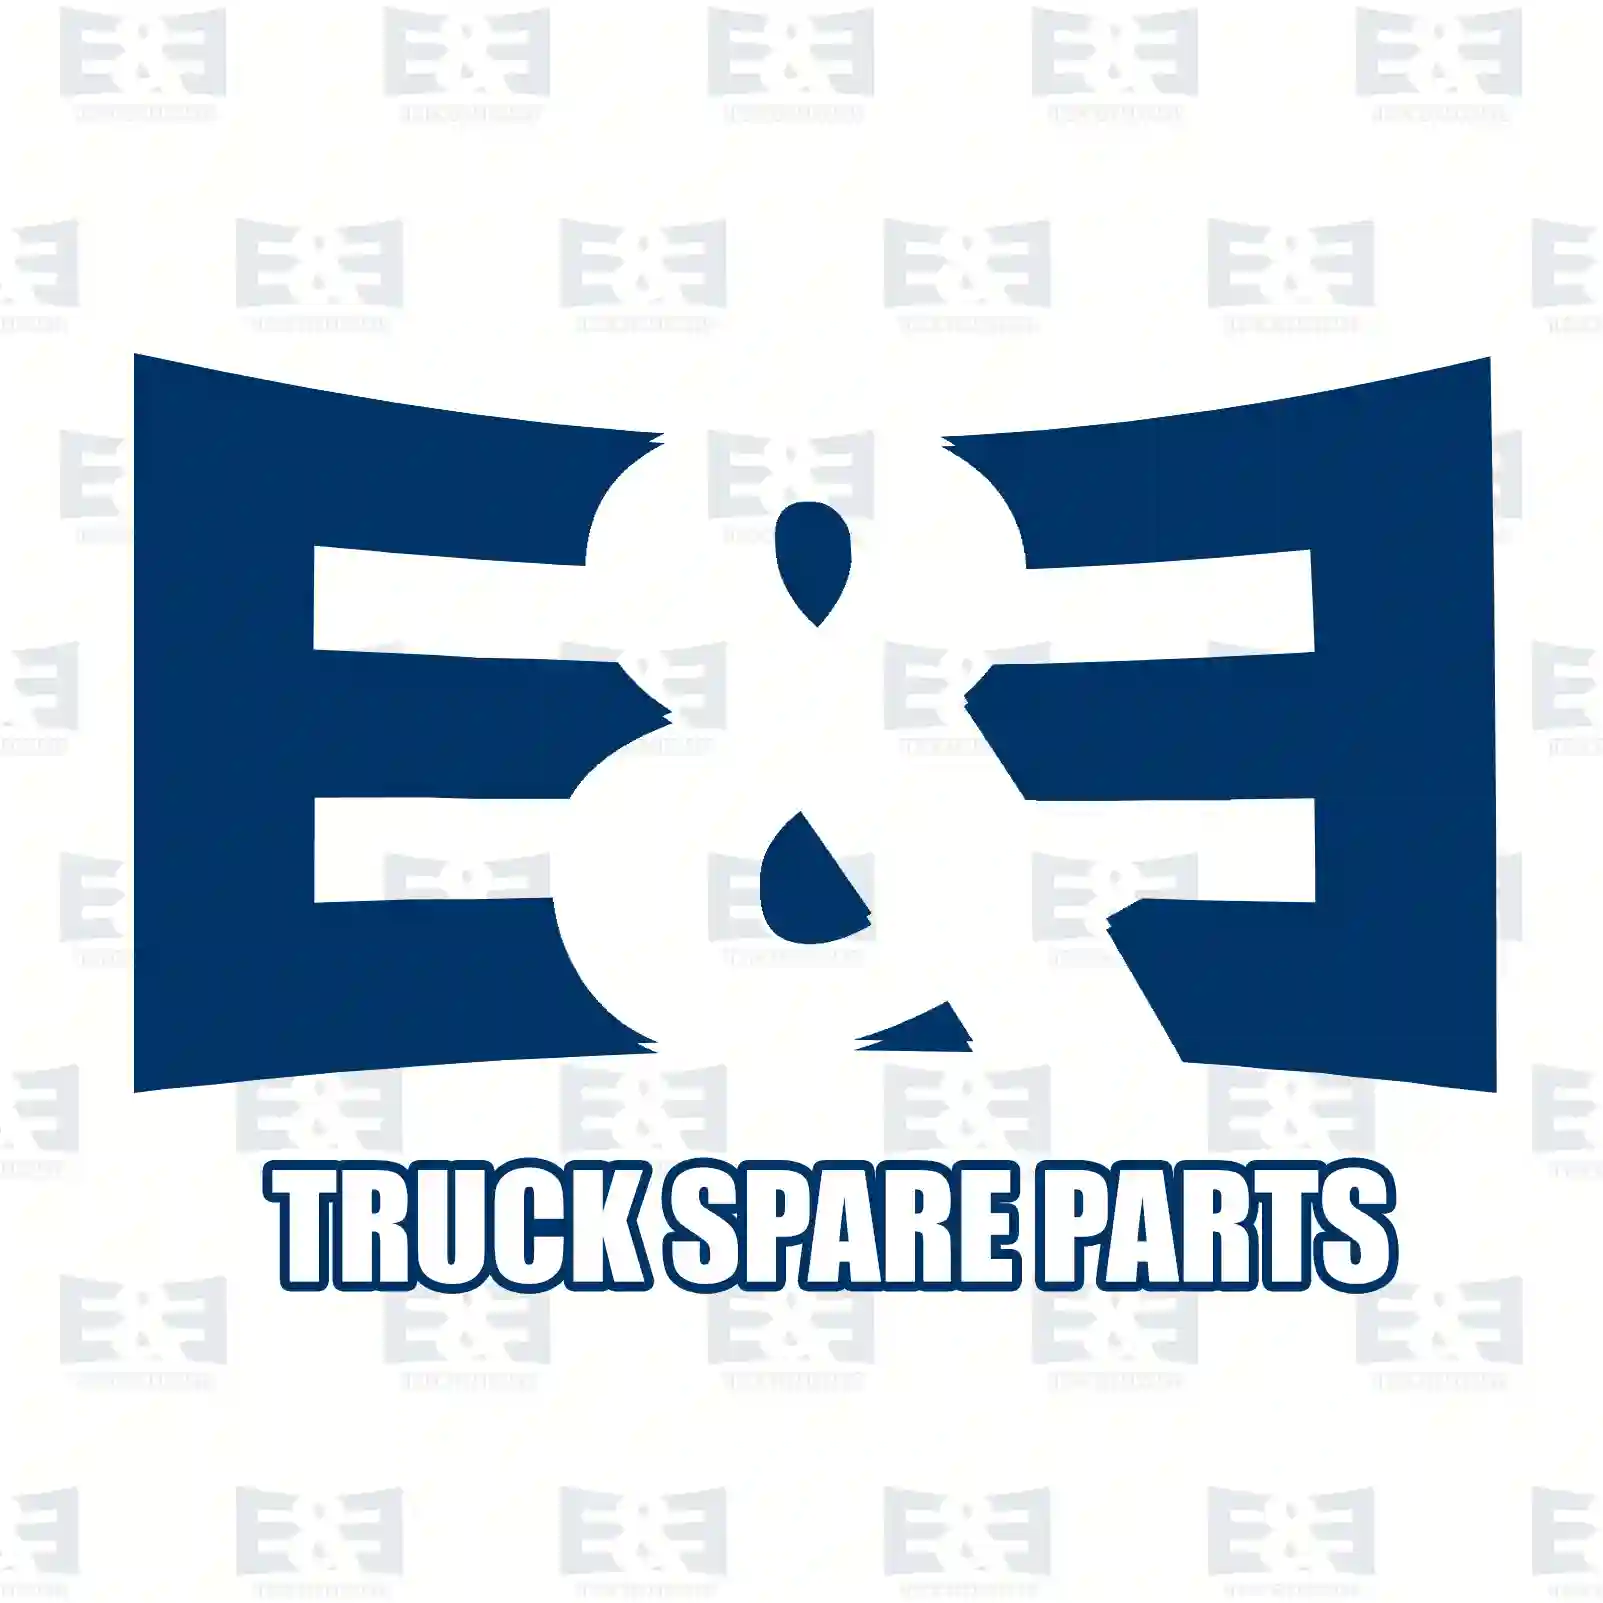 NOx Sensor, 2E2298878, #YOK ||  2E2298878 E&E Truck Spare Parts | Truck Spare Parts, Auotomotive Spare Parts NOx Sensor, 2E2298878, #YOK ||  2E2298878 E&E Truck Spare Parts | Truck Spare Parts, Auotomotive Spare Parts